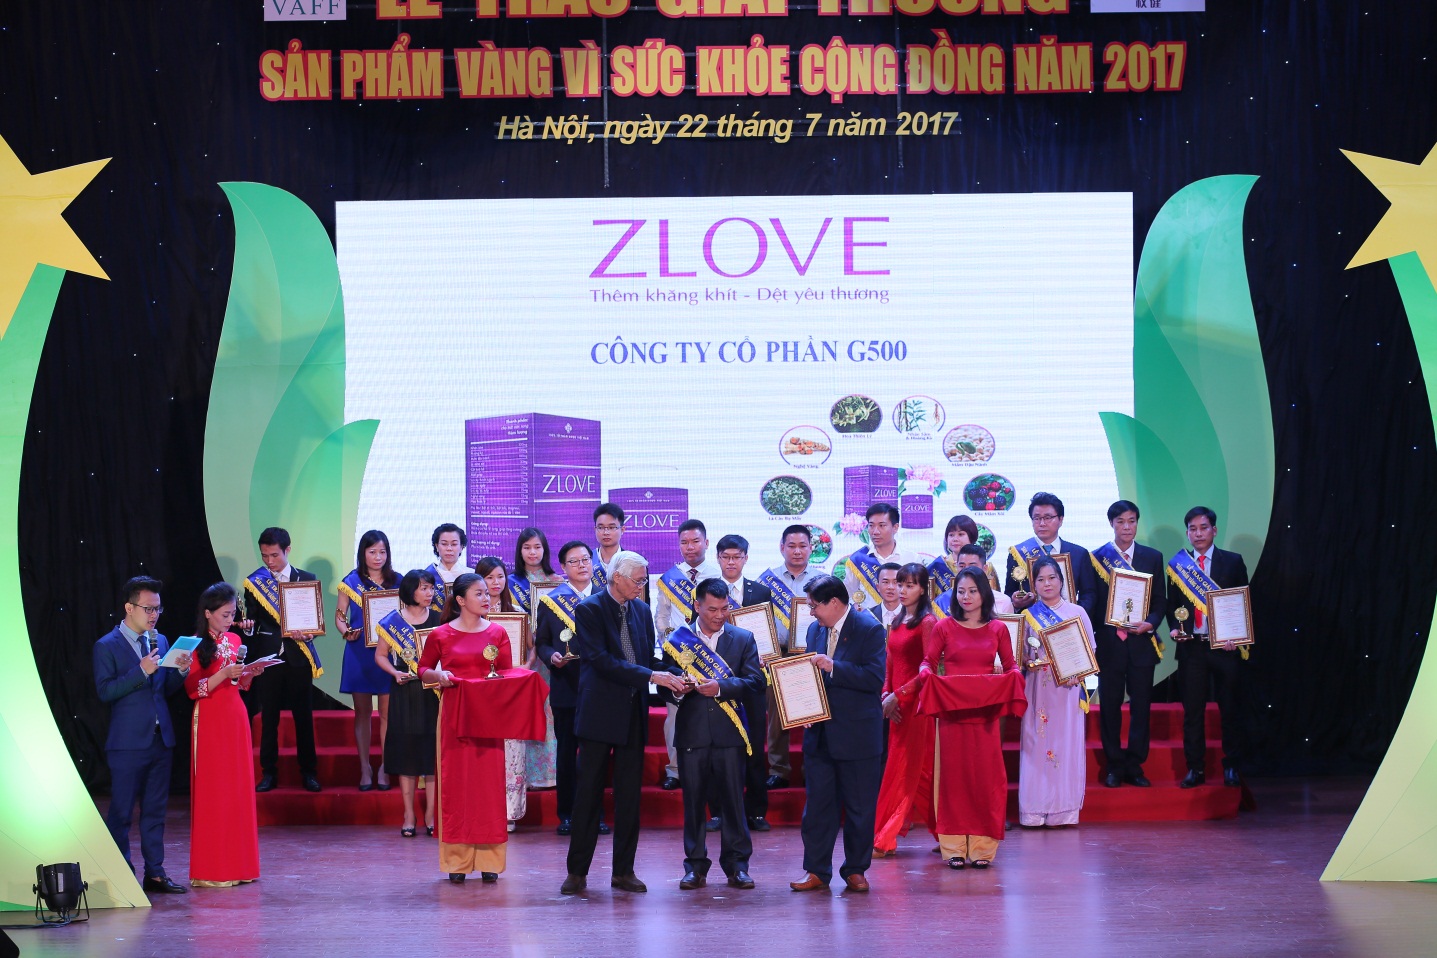 zlove được nhận giải vì sức khỏe cộng đồng